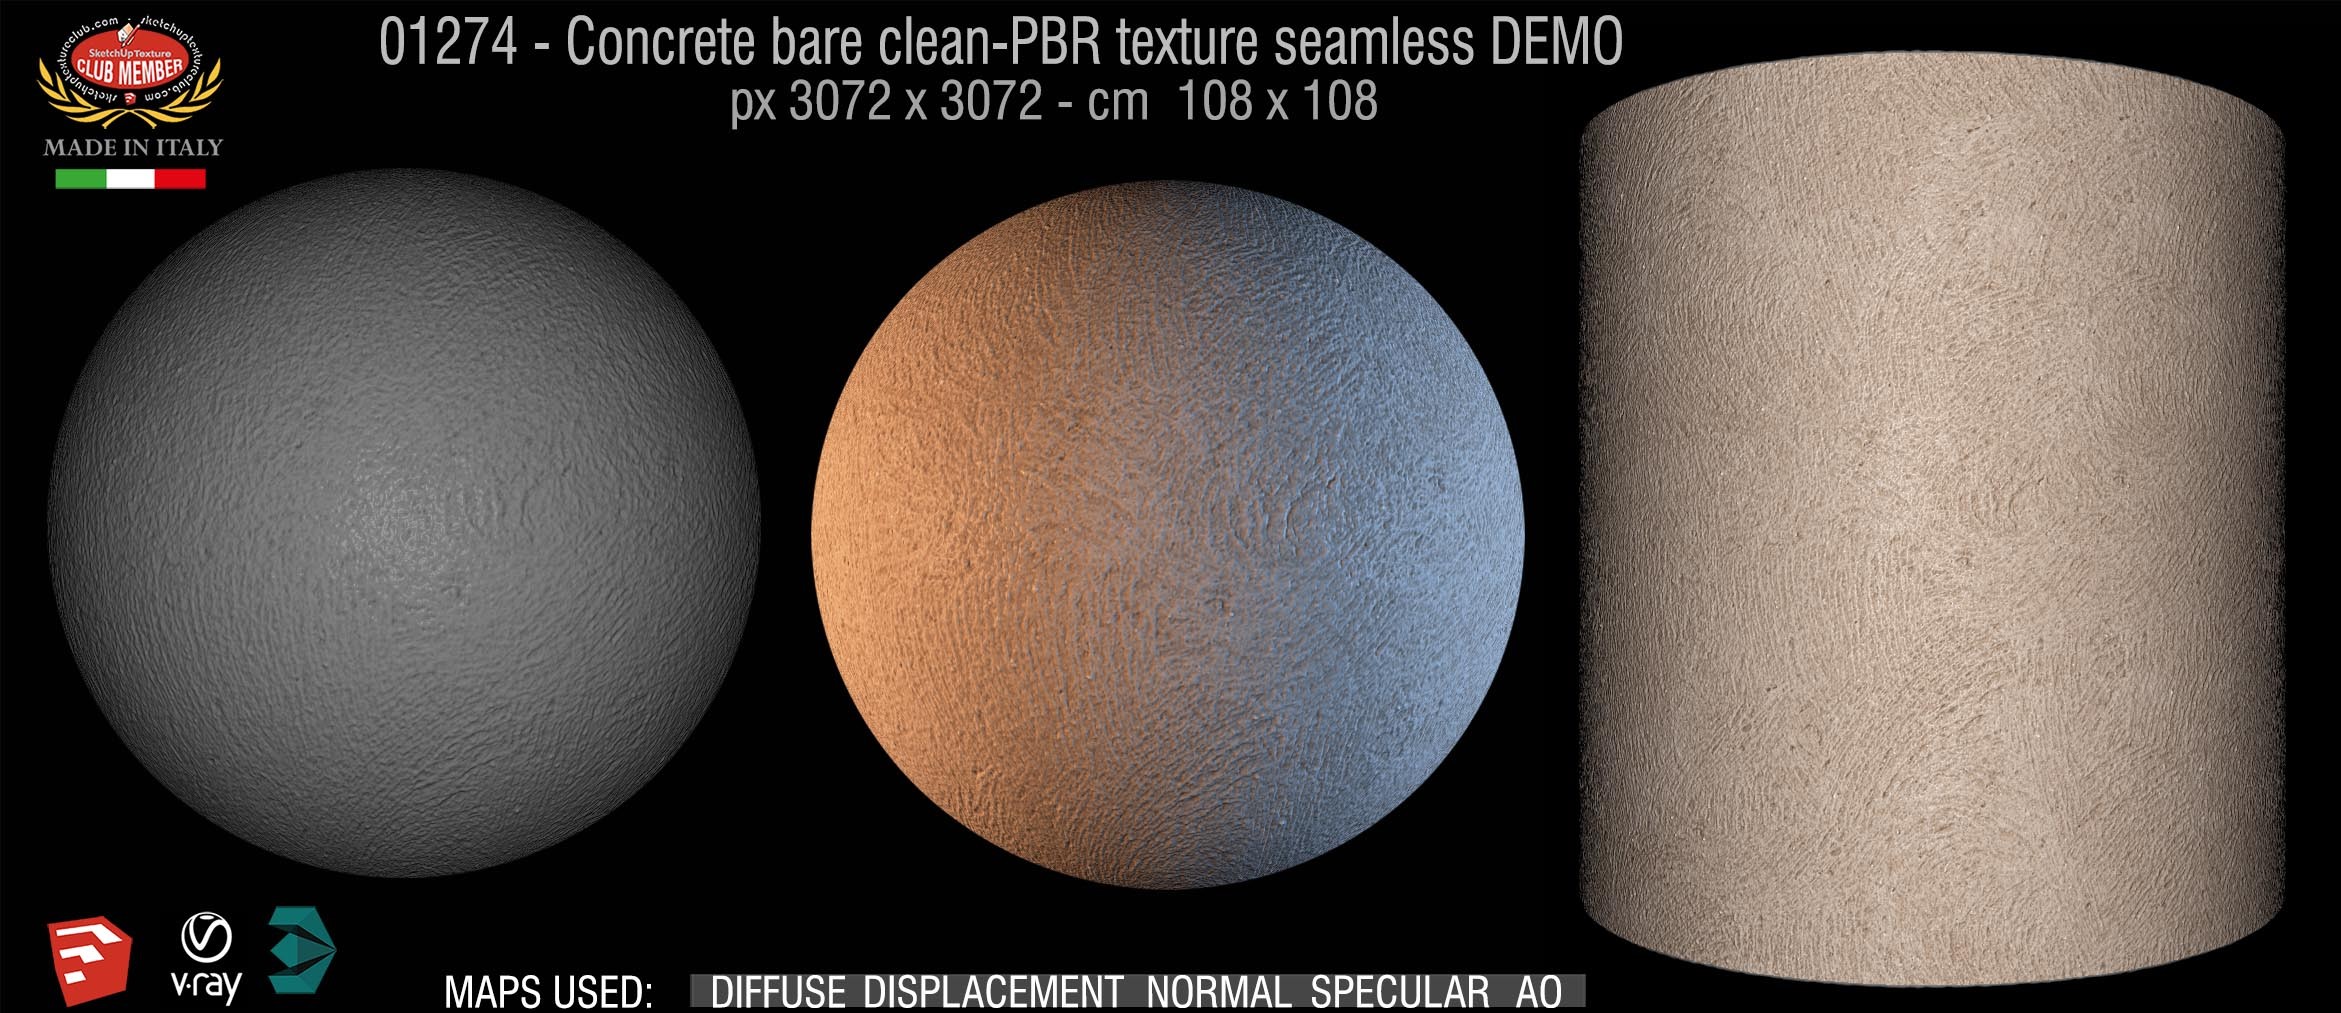 01271 Concrete bare clean-PBR texture seamless DEMO